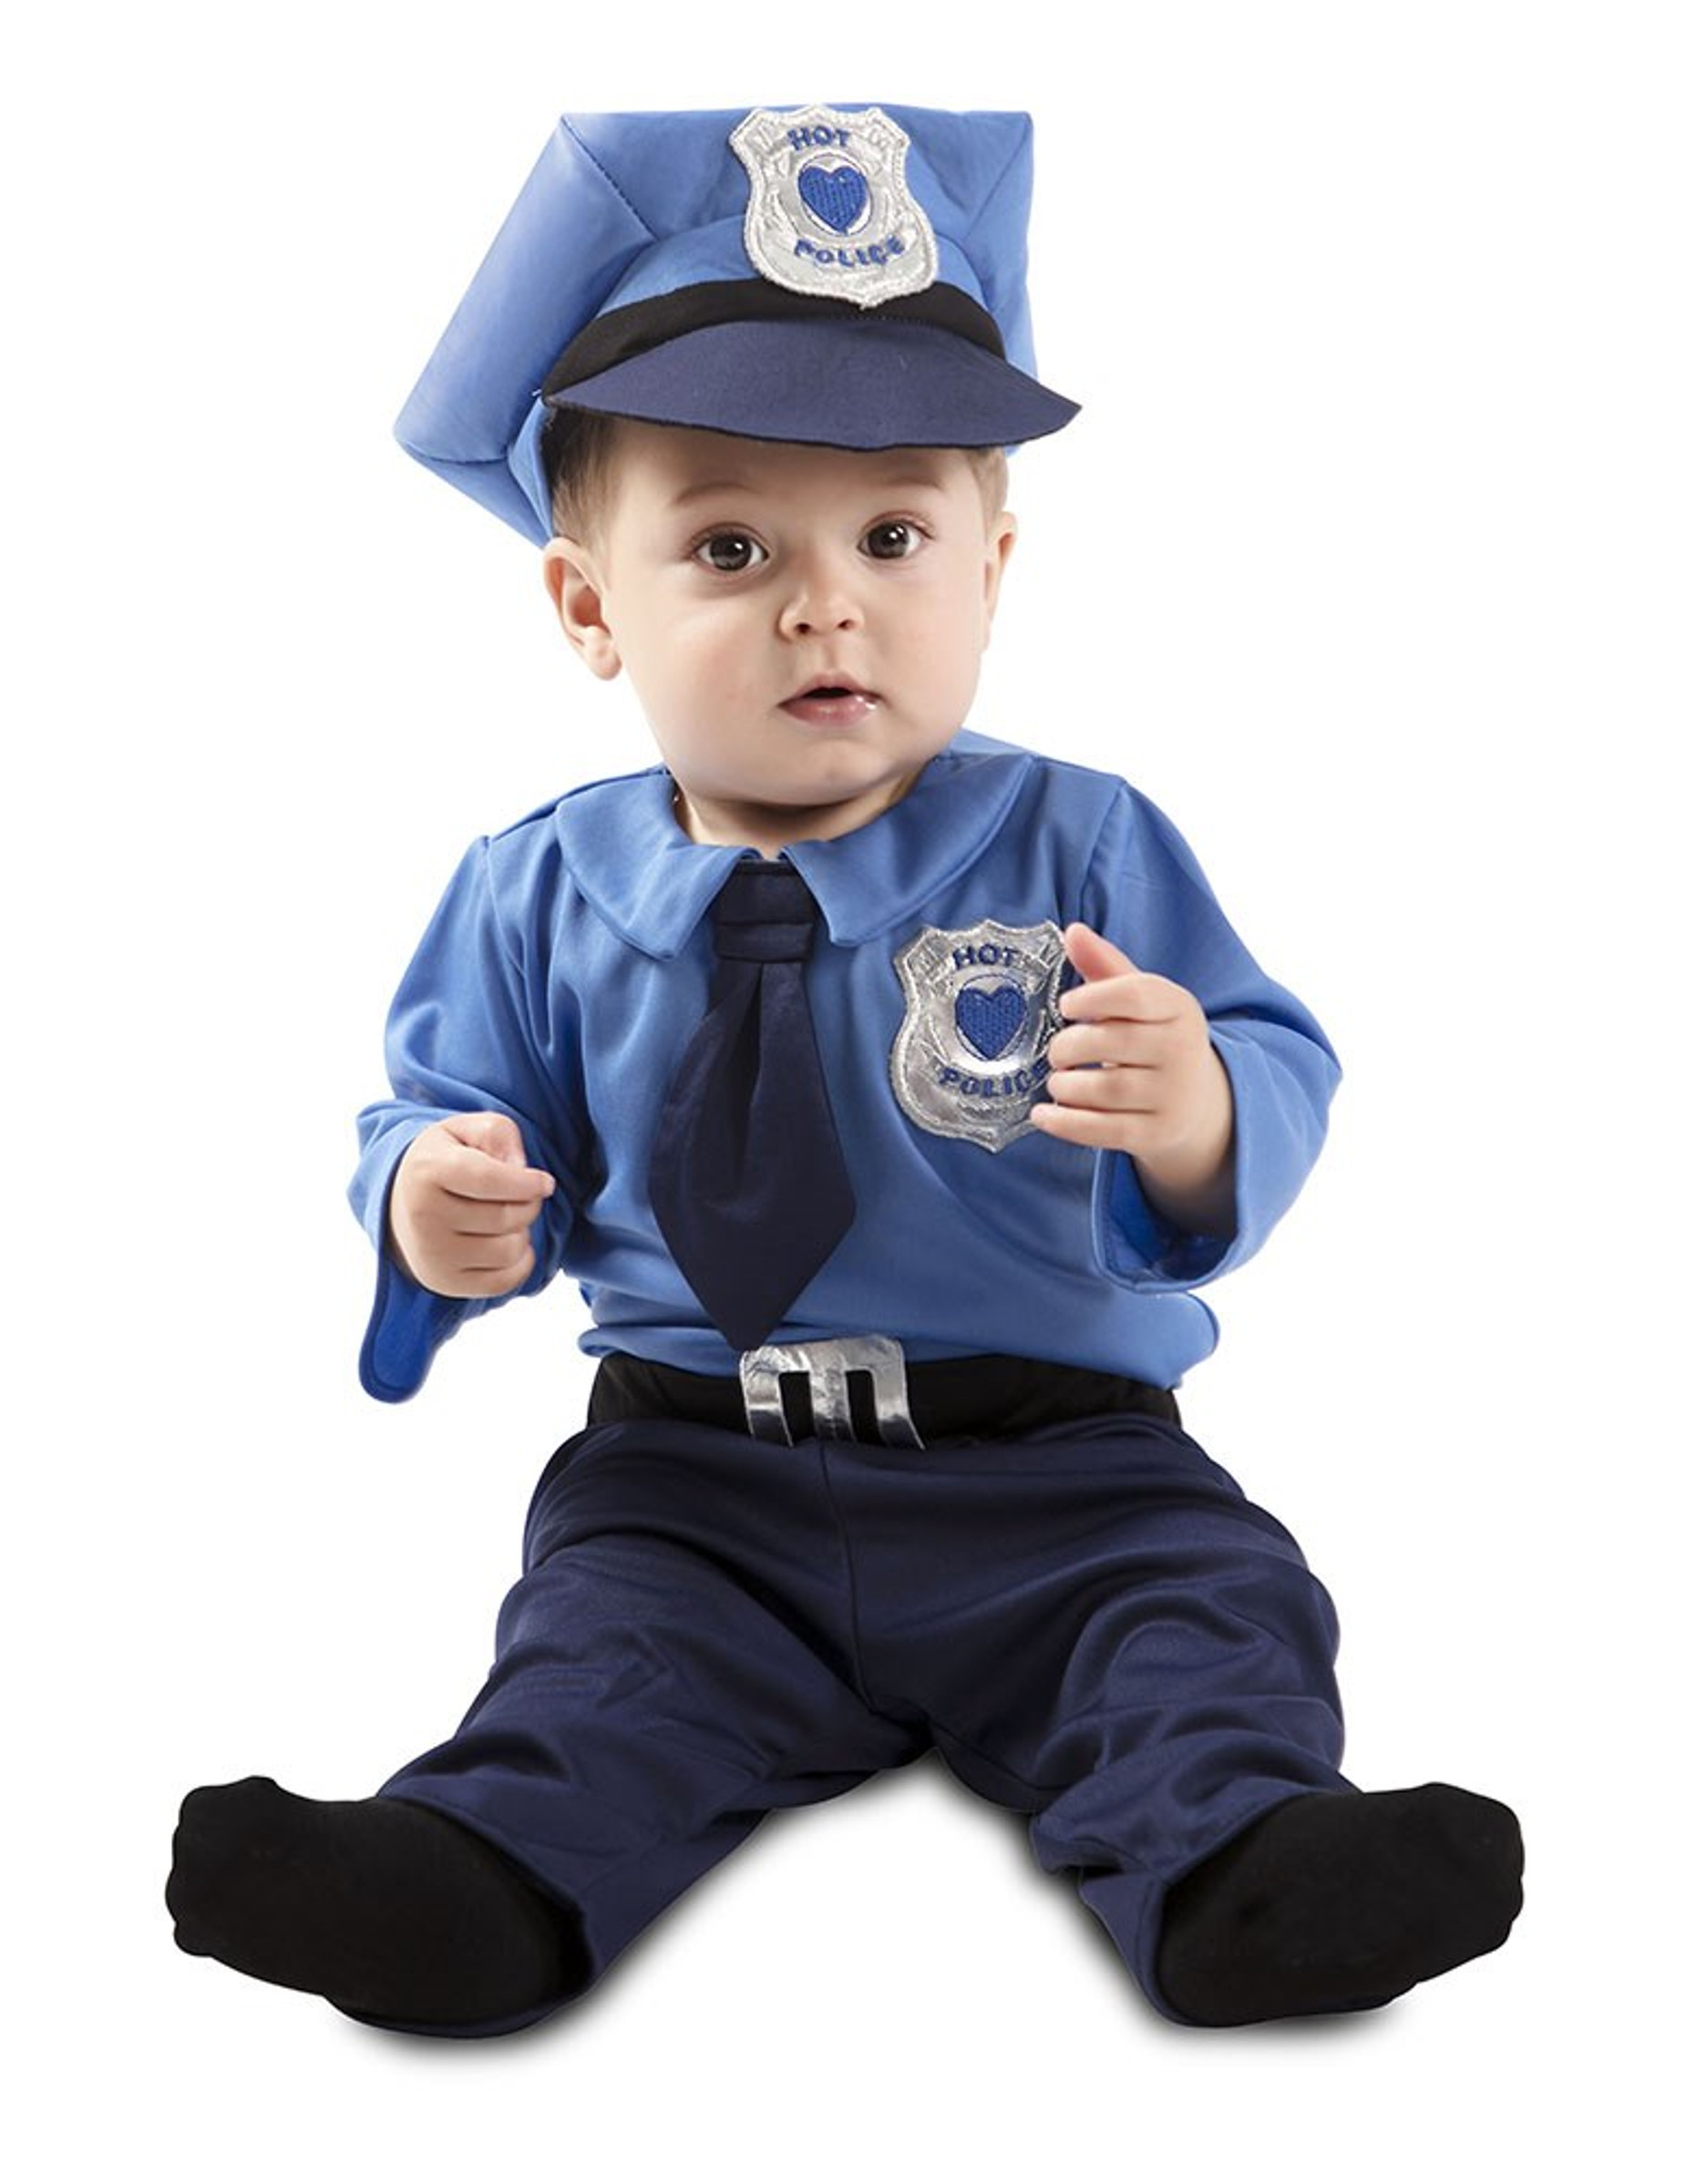 Déguisement agent de police bébé – Déguisements cadeaux pas chers, Boutique Arlequin